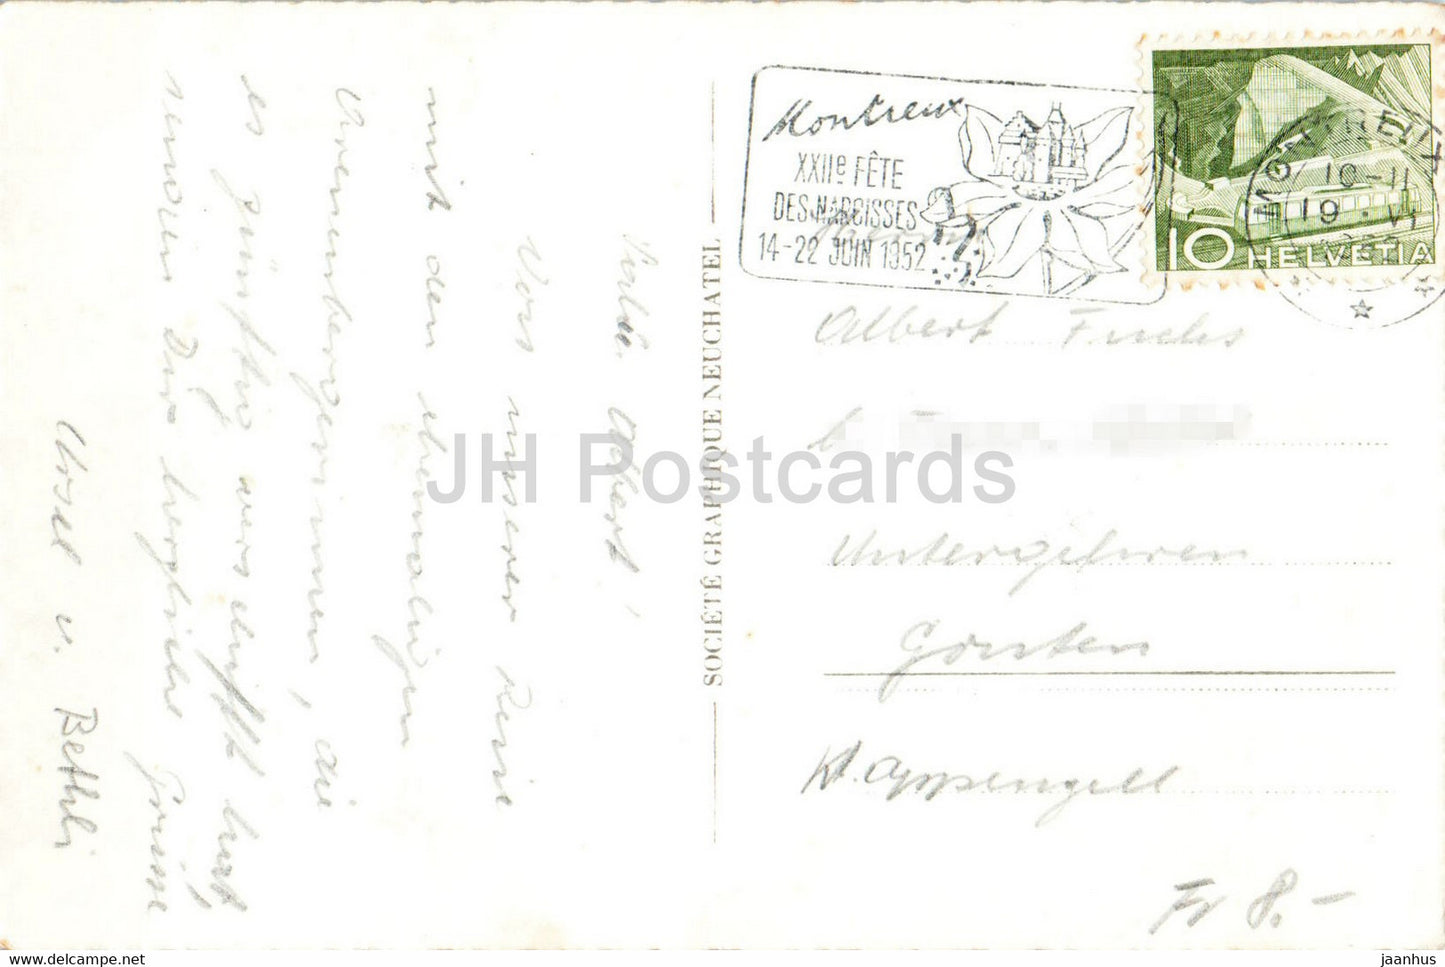 Montreux - Clarens - 7730 - 1952 - carte postale ancienne - Suisse - occasion